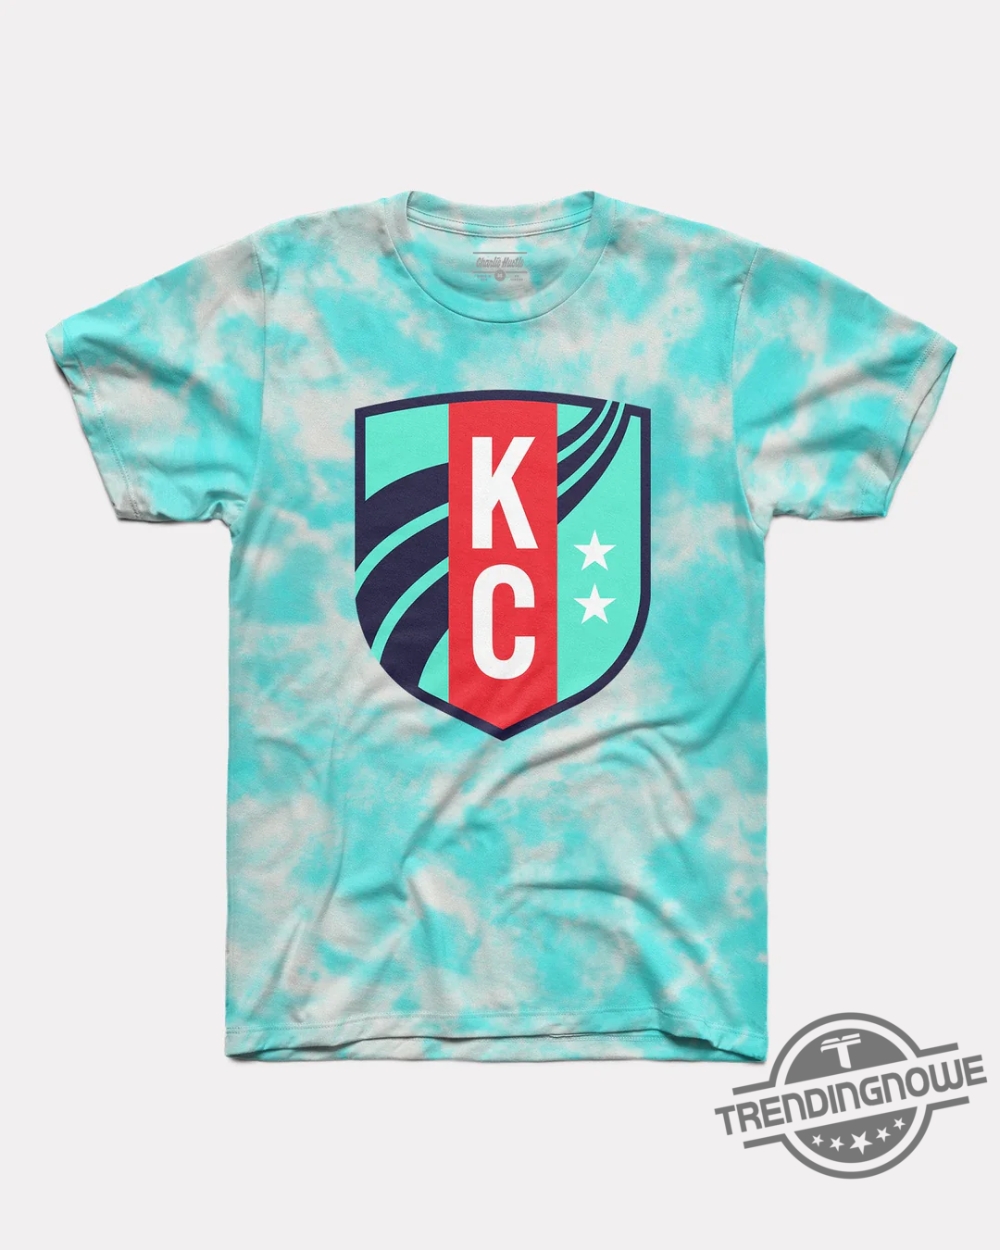 Kc Current Shirt Kc Current Crest Teal Tie Dye Shirt